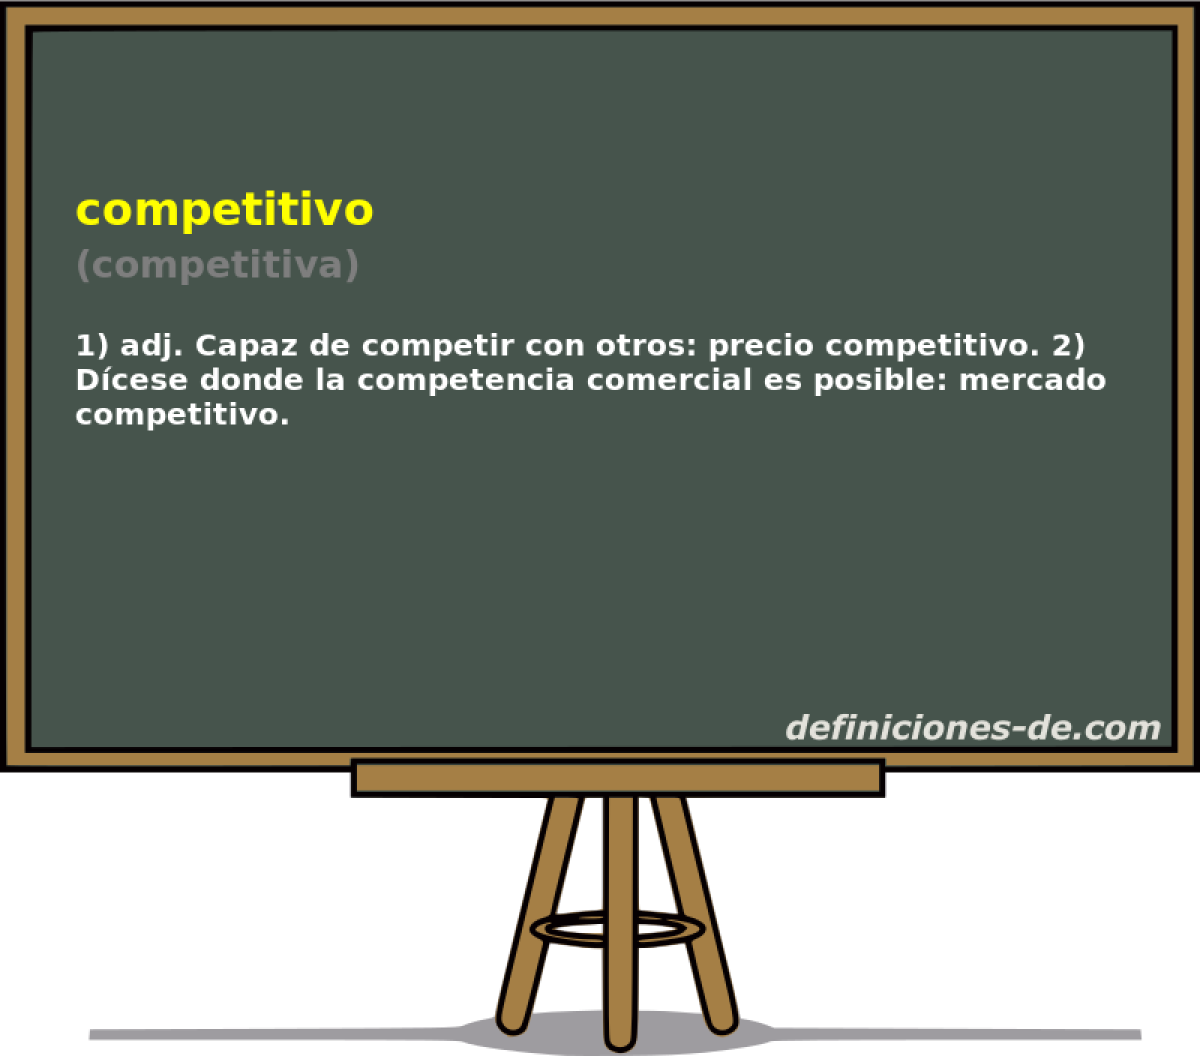 competitivo (competitiva)